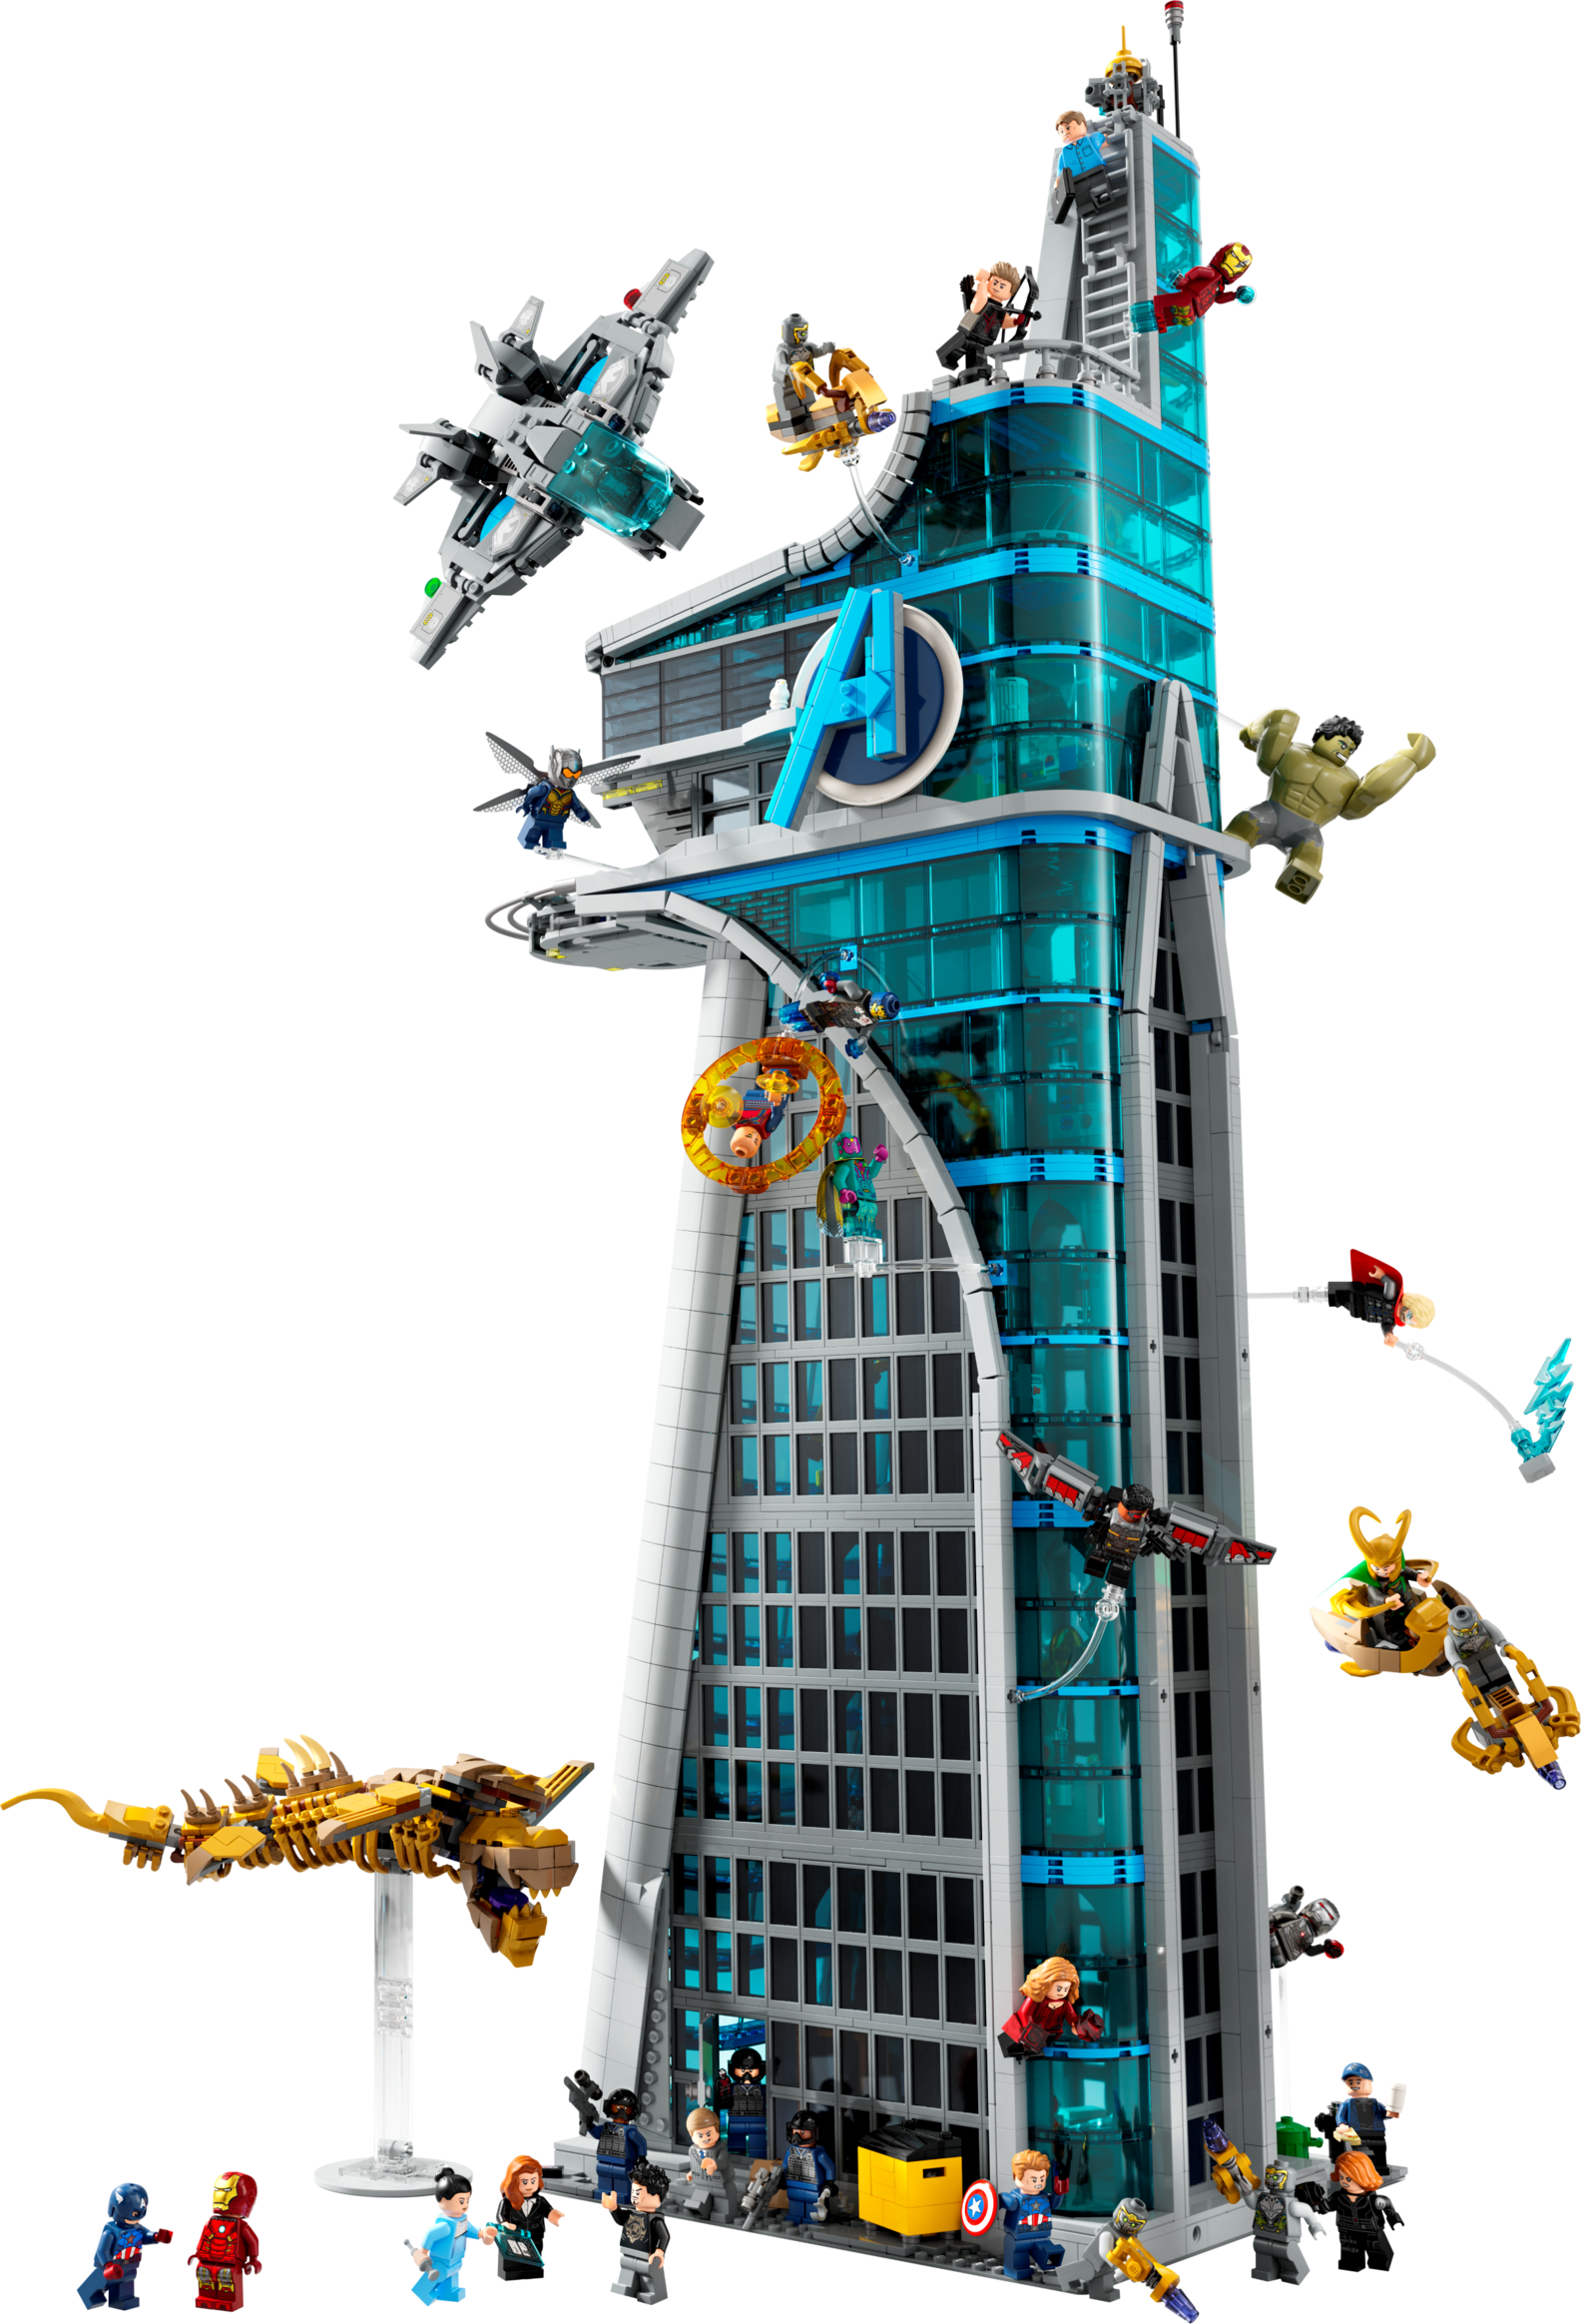 Avengers Tower für 499,99€ in Lego